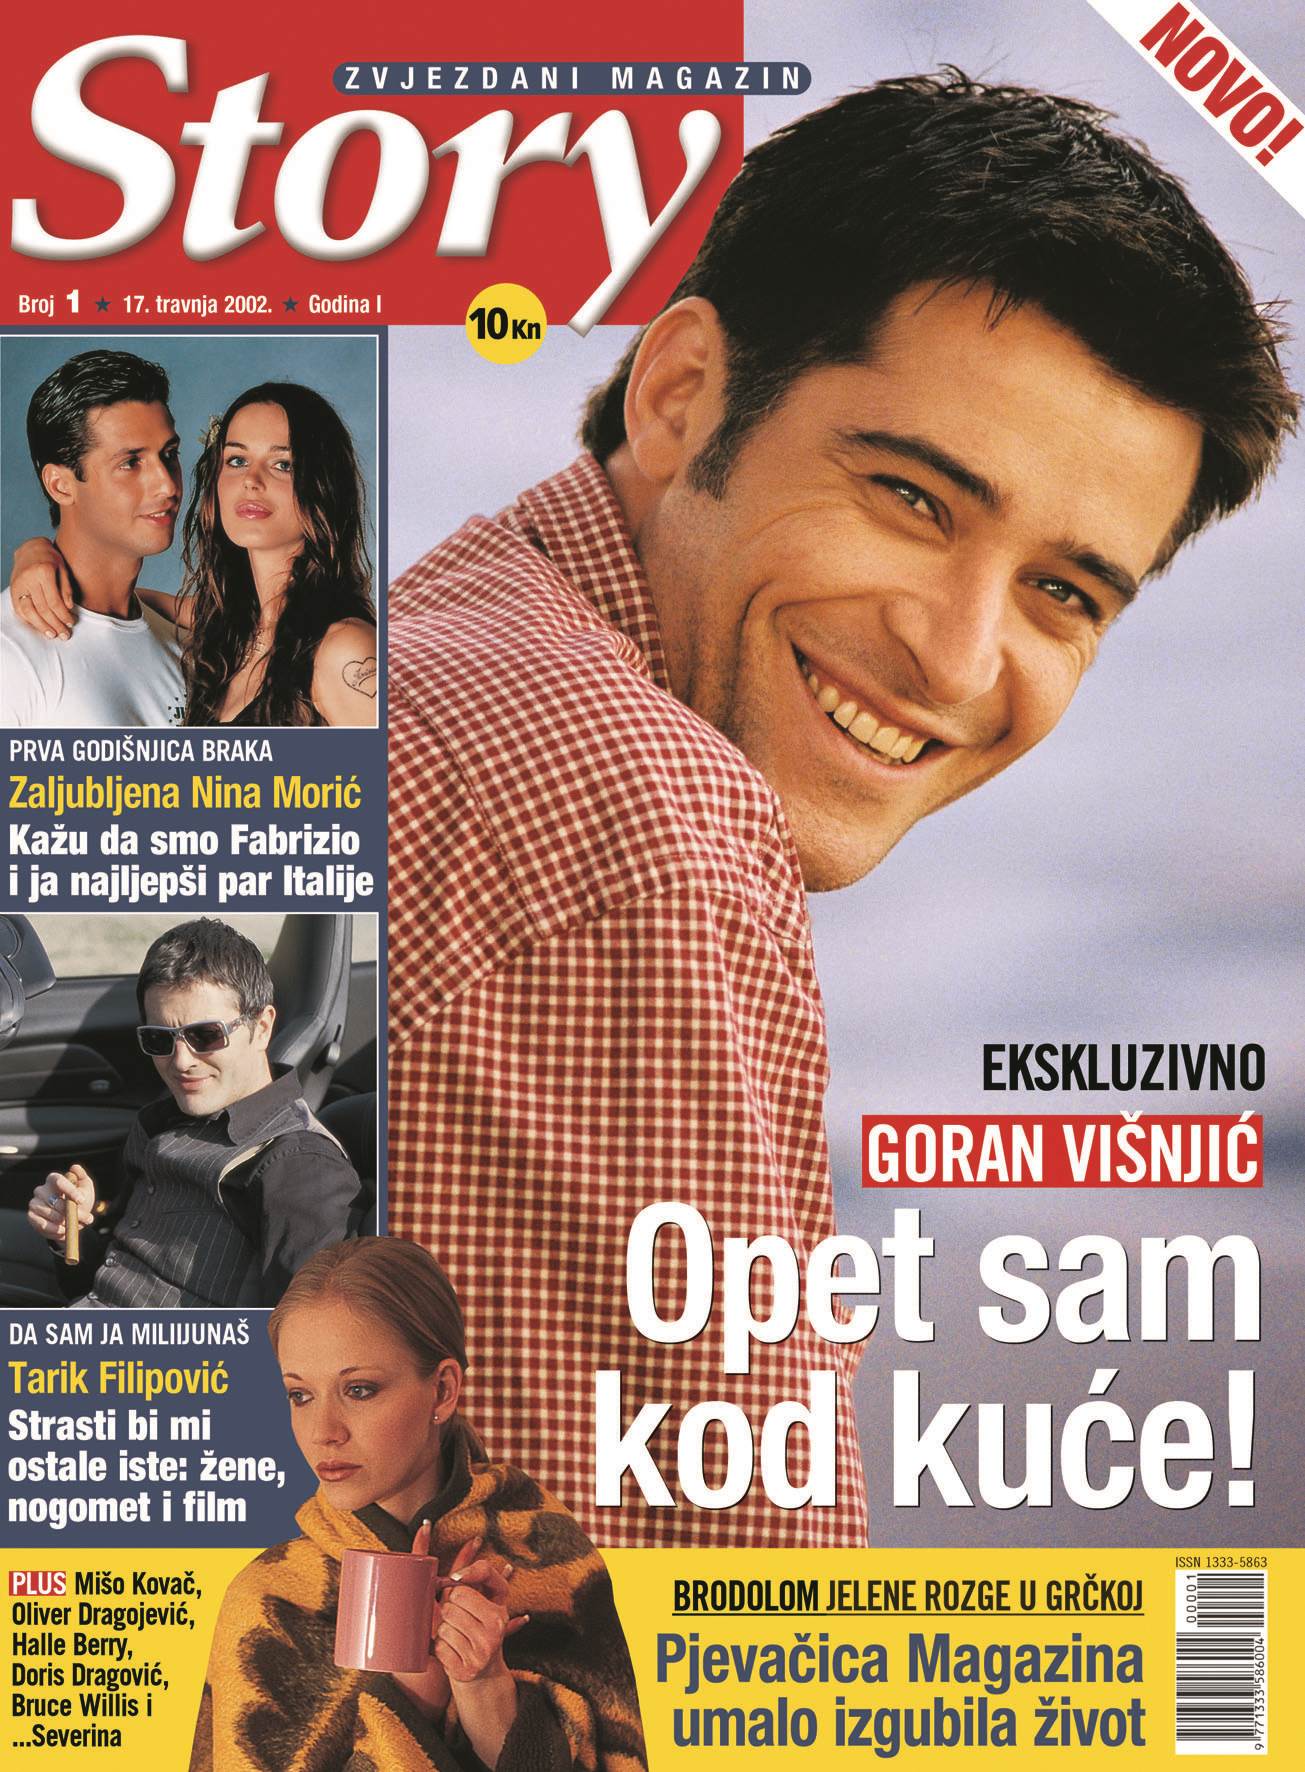 PRELISTAJTE NAŠ PRVI BROJ Goran Višnjić krasio nam je naslovnicu 2002. 